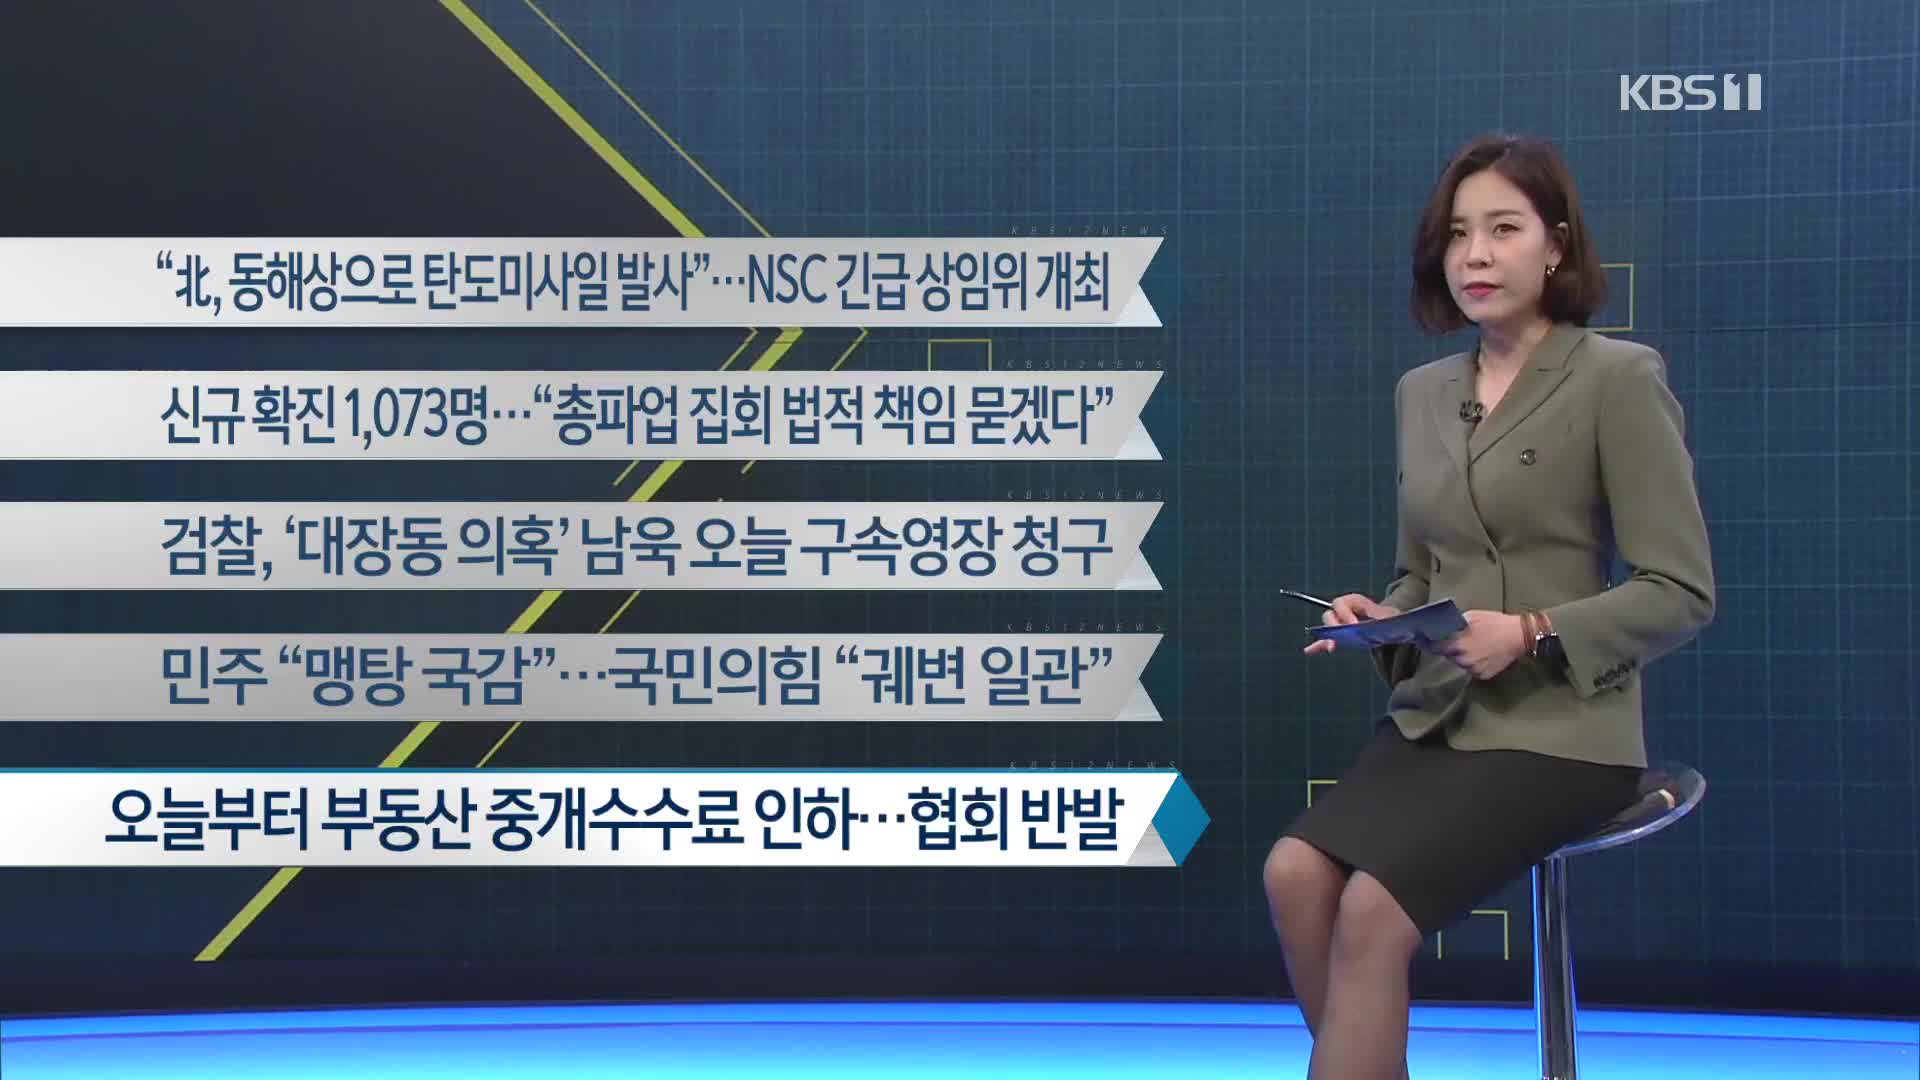 [이 시각 주요뉴스] “北, 동해상으로 탄도미사일 발사”…NSC 긴급 상임위 개최 외